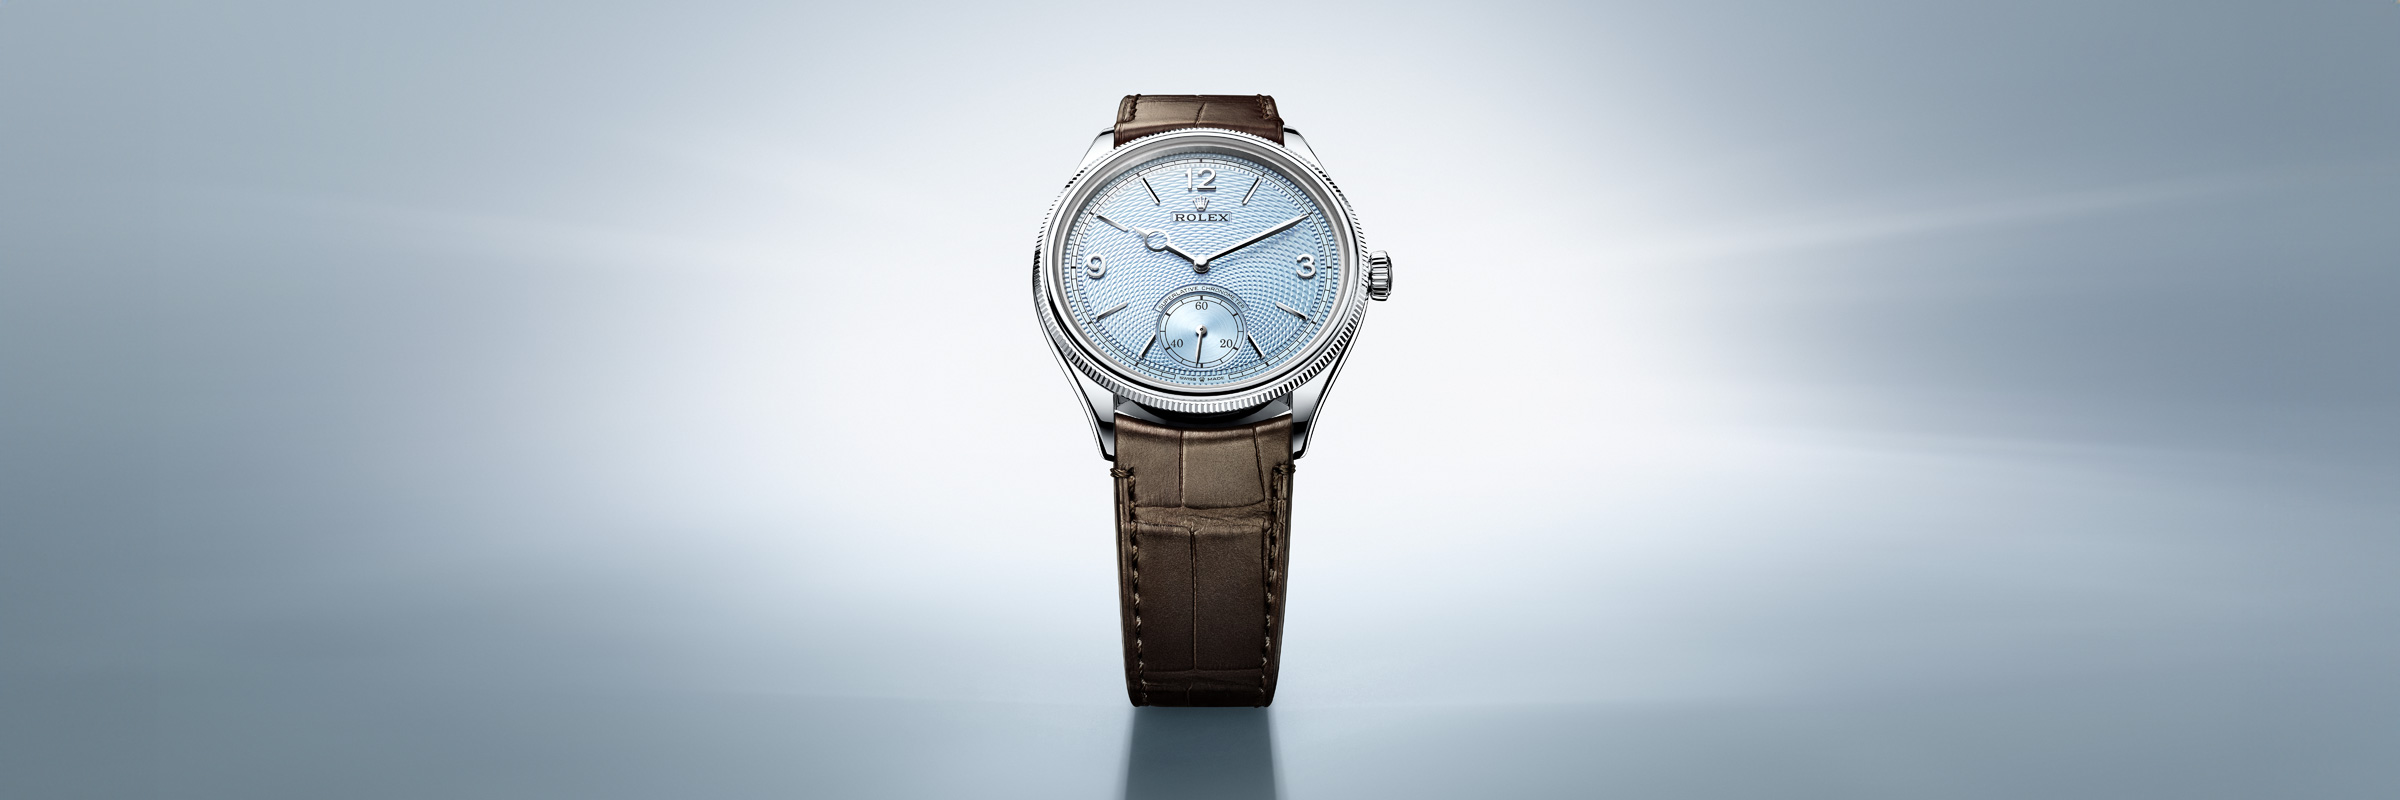 Rolex 1908 watches